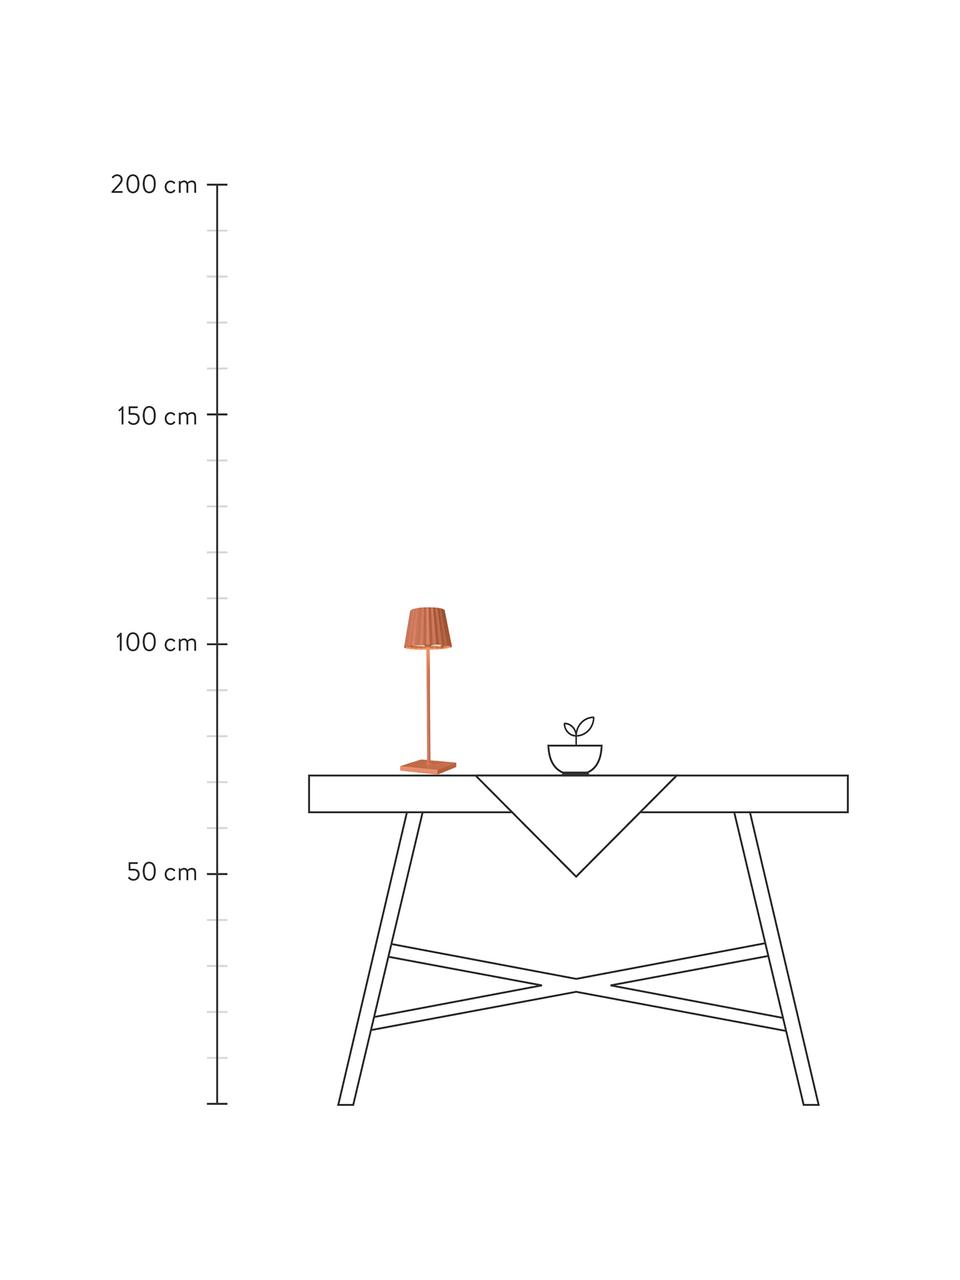 Lampe d'extérieur mobile intensité variable Troll, Orange, Ø 12 x haut. 38 cm